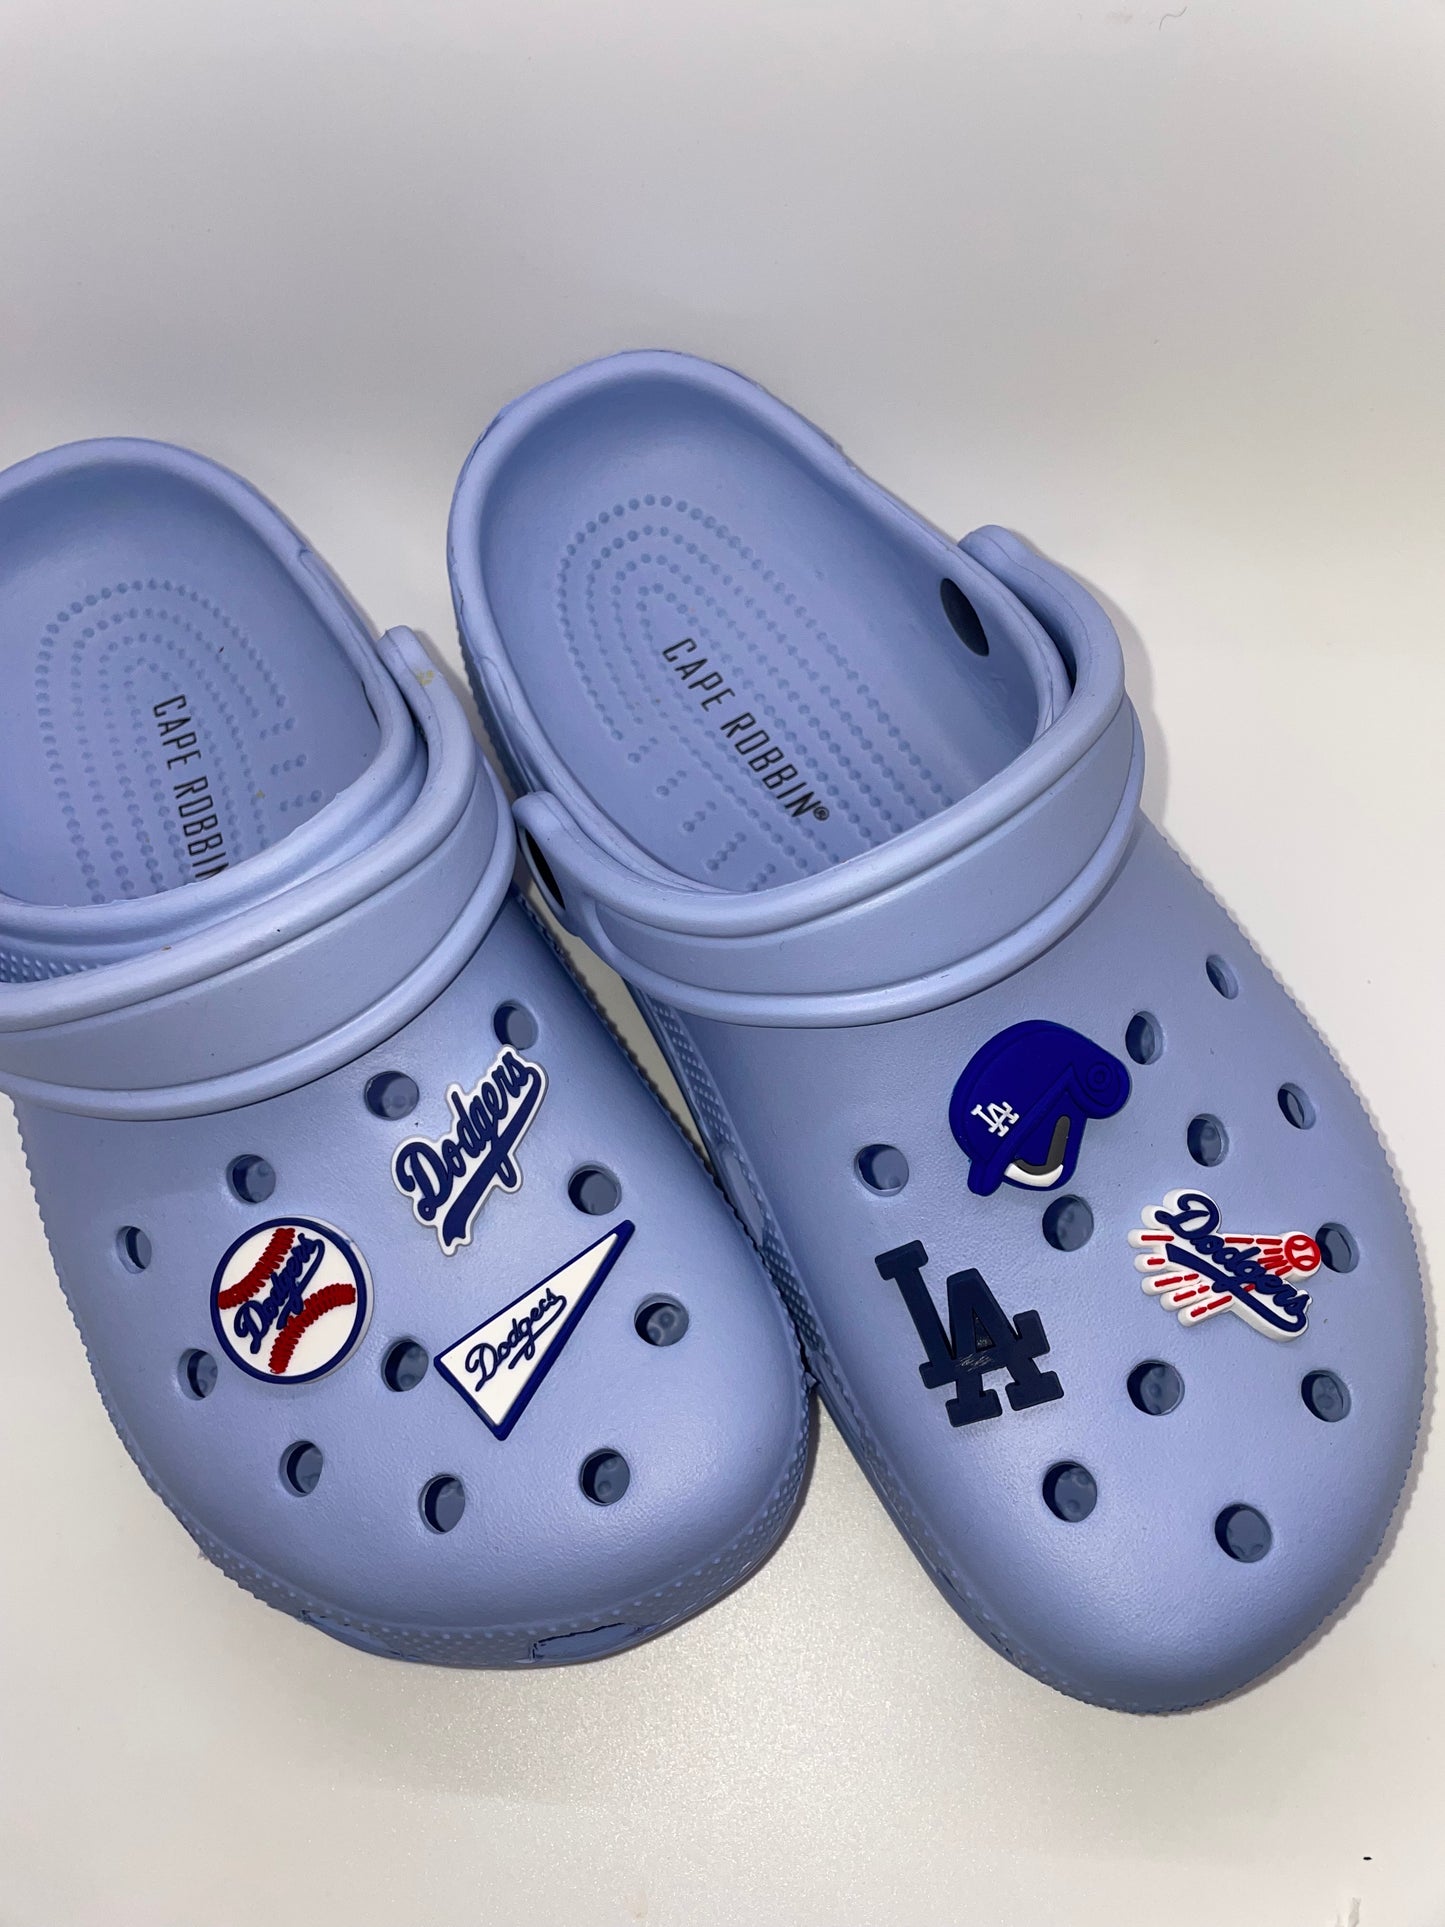 LA Dodgers Shoe Charms